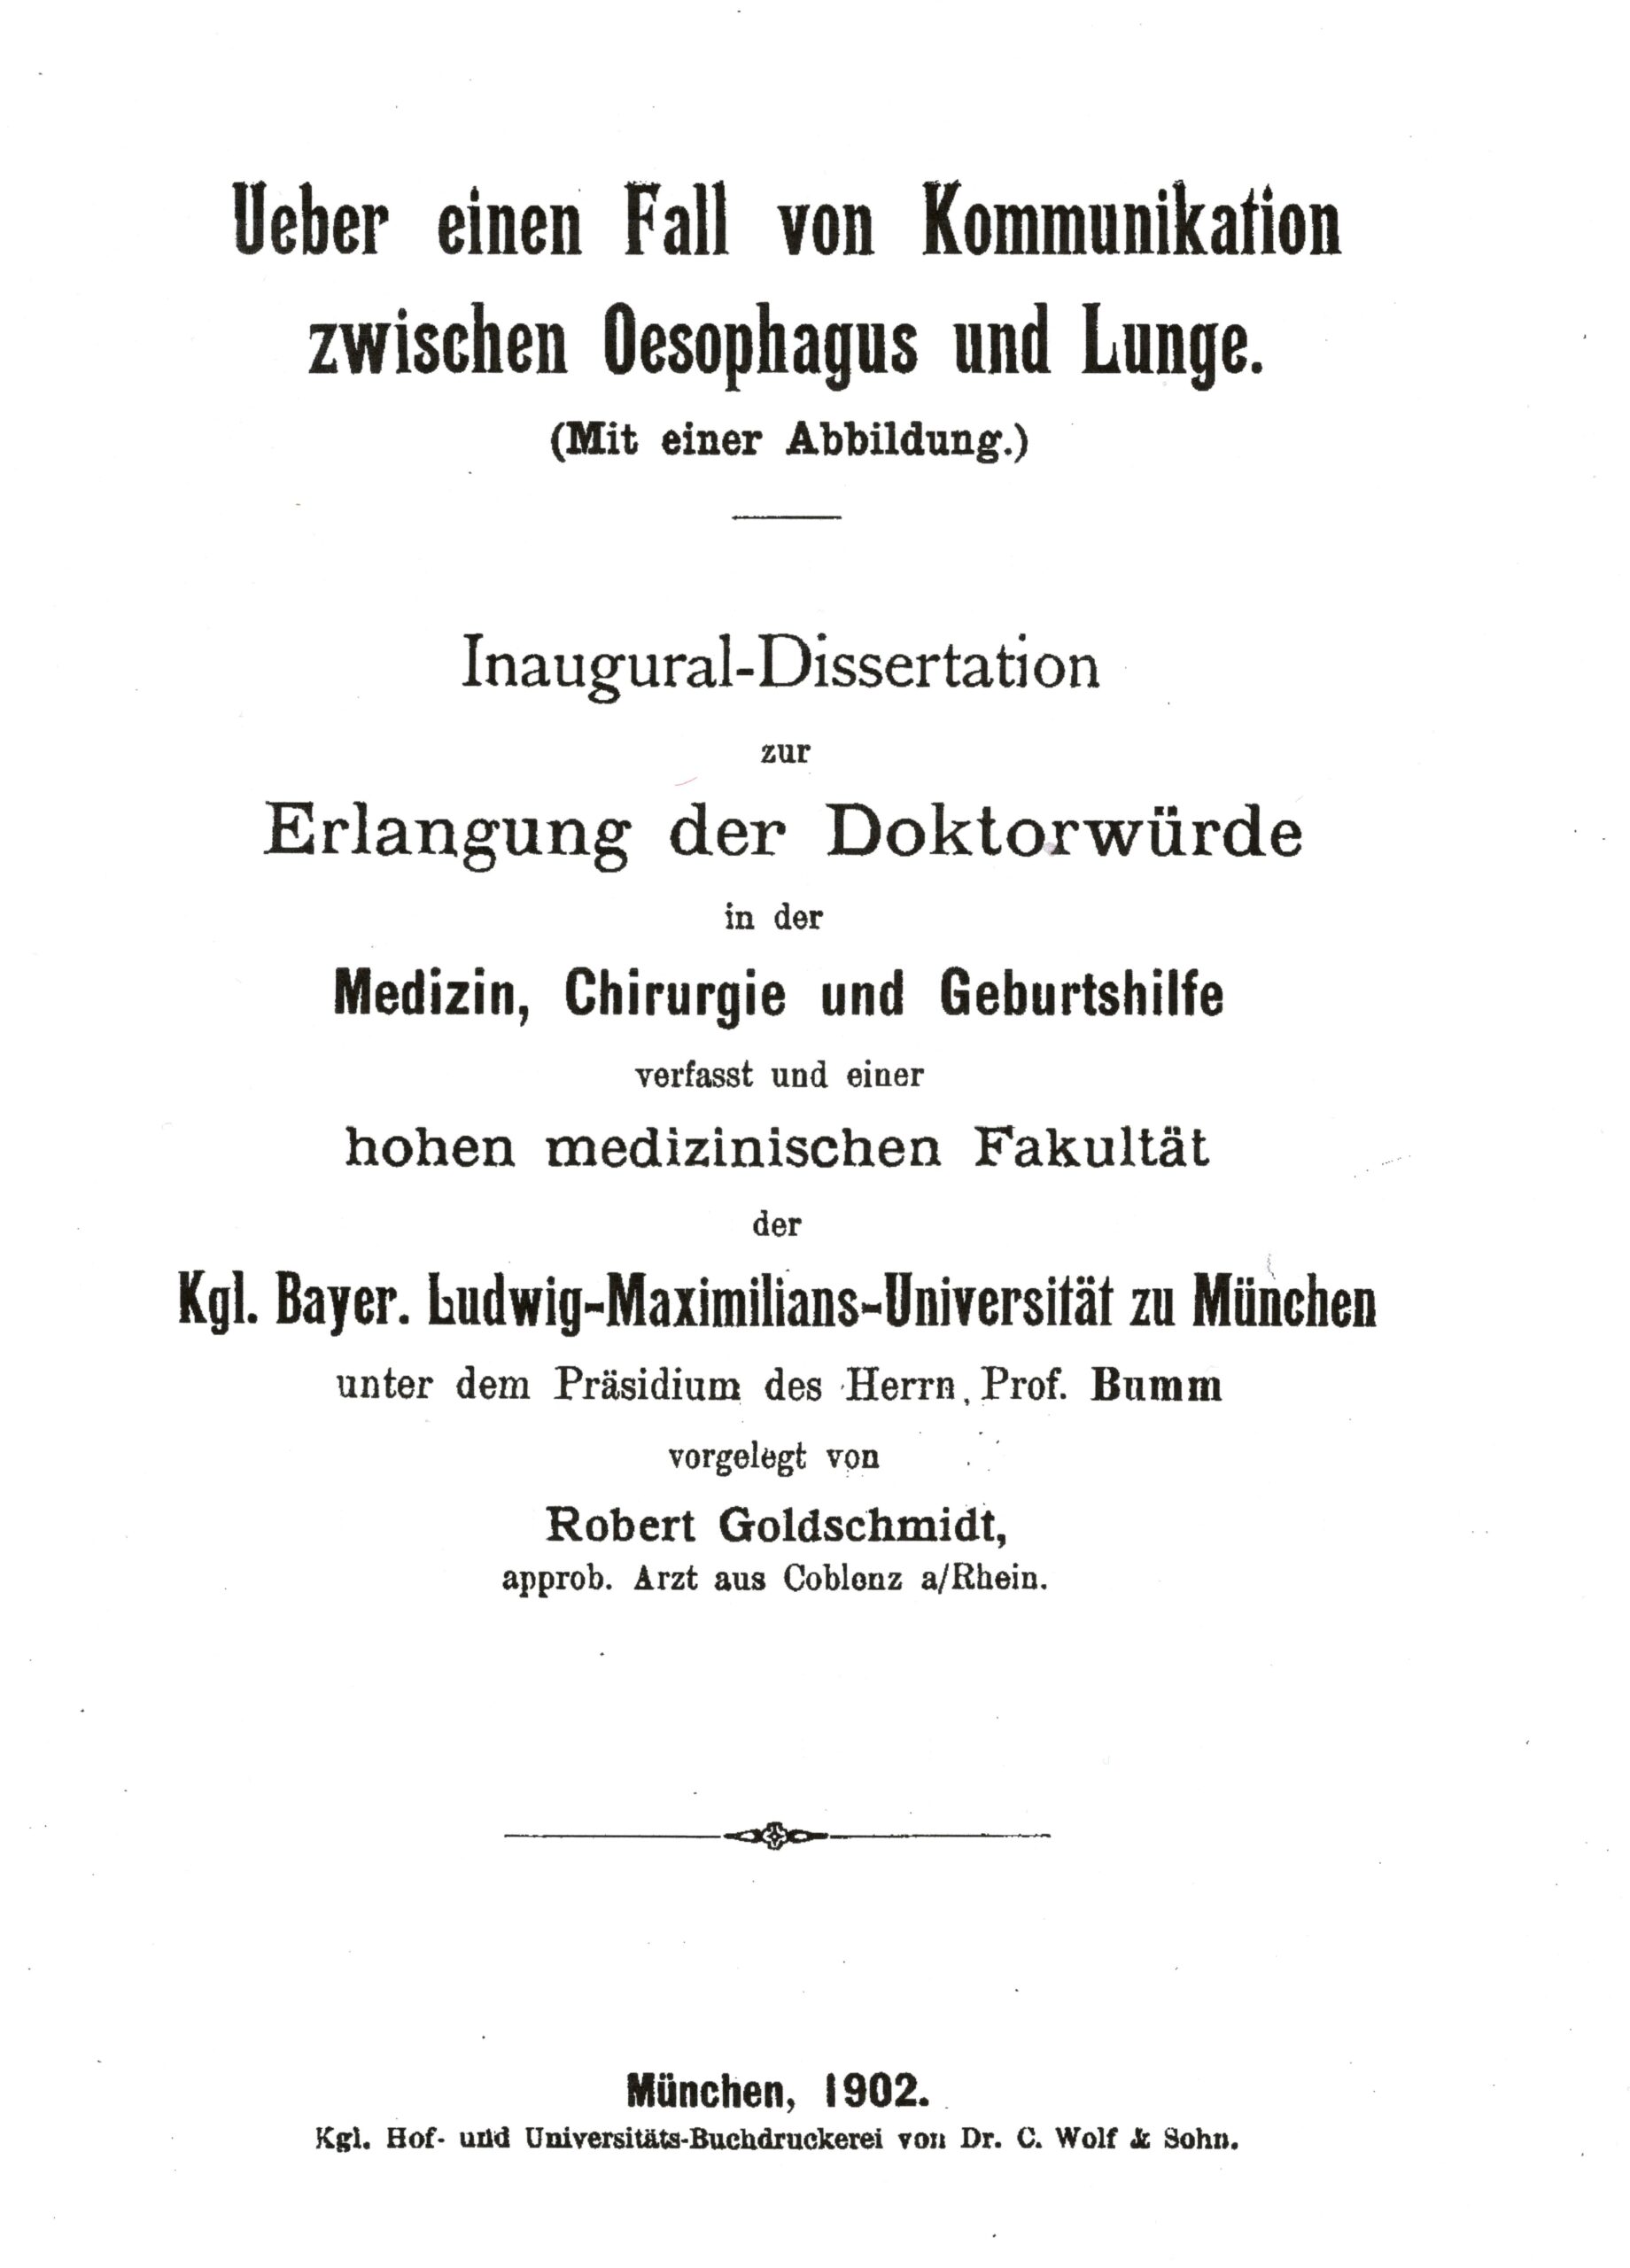 Dissertation, Munich 1902